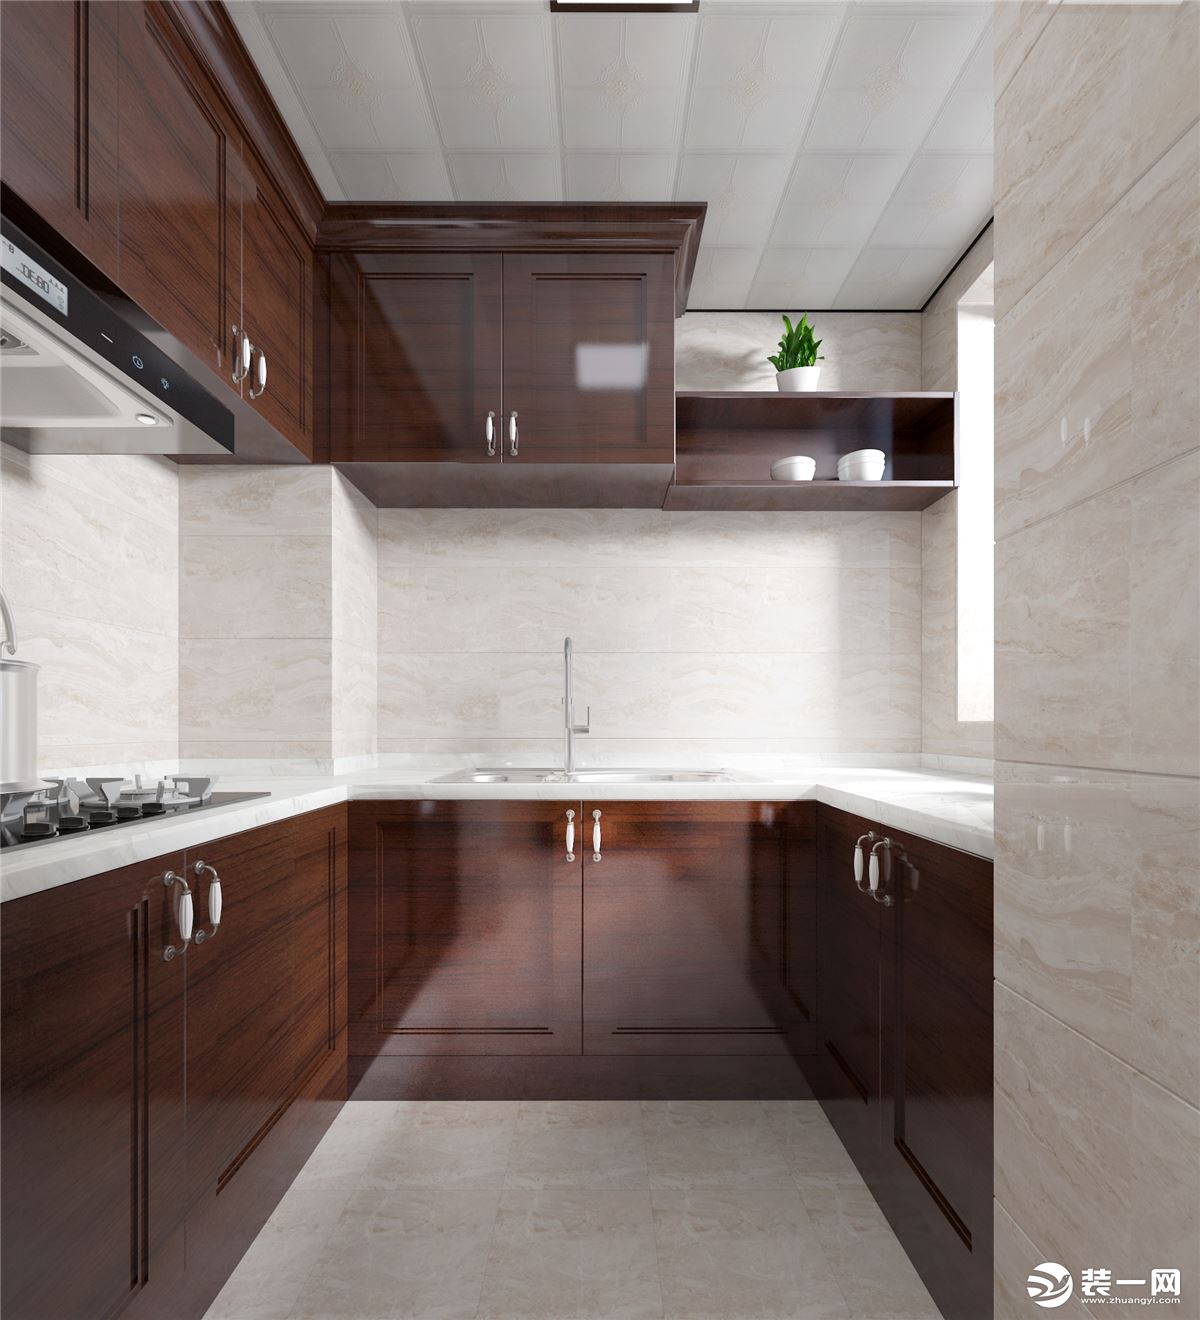 厨房选用木色的橱柜，u型的布局提供了丰富实用的烹饪空间。